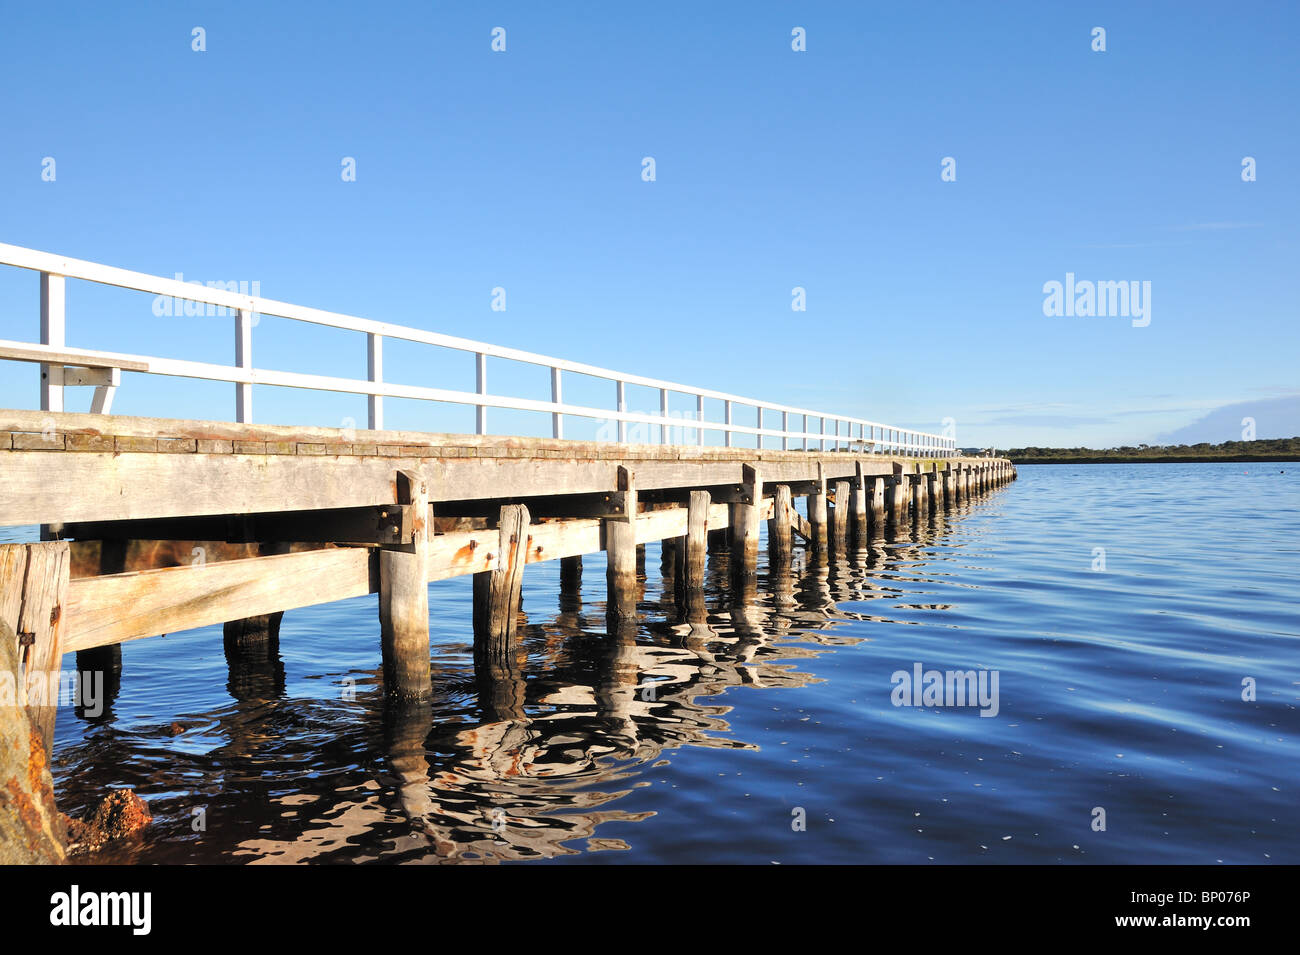 Wooden jetty in a west Australian landscape Stock Photo